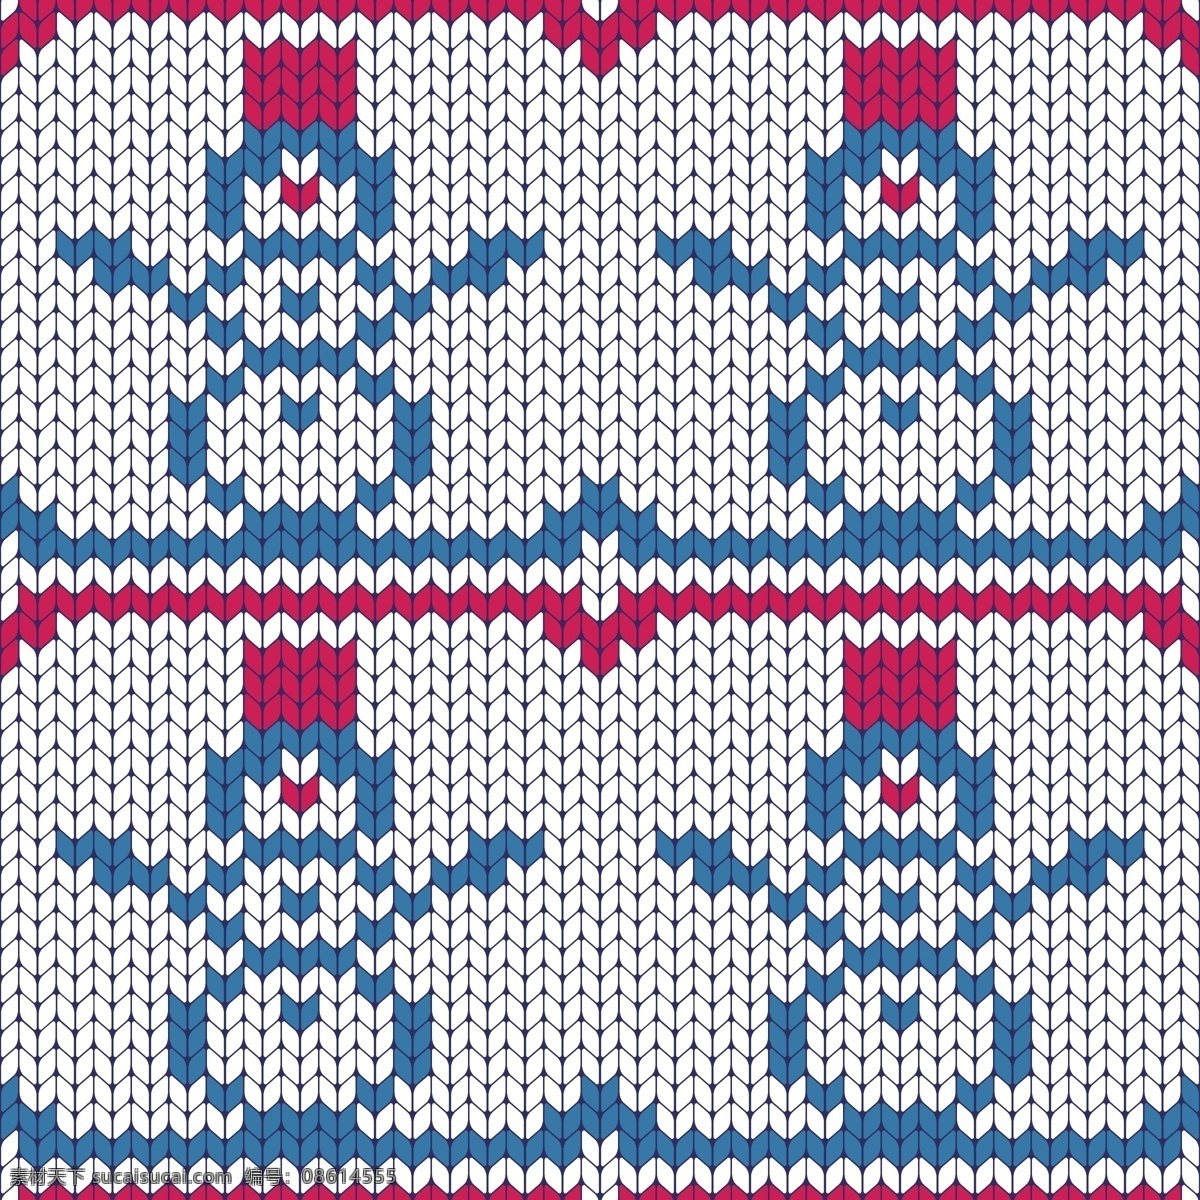 红帽子 雪人 圣诞节 填充 背景 矢量 白色 冬季 节日 平面素材 设计素材 矢量素材 下雪 雪白